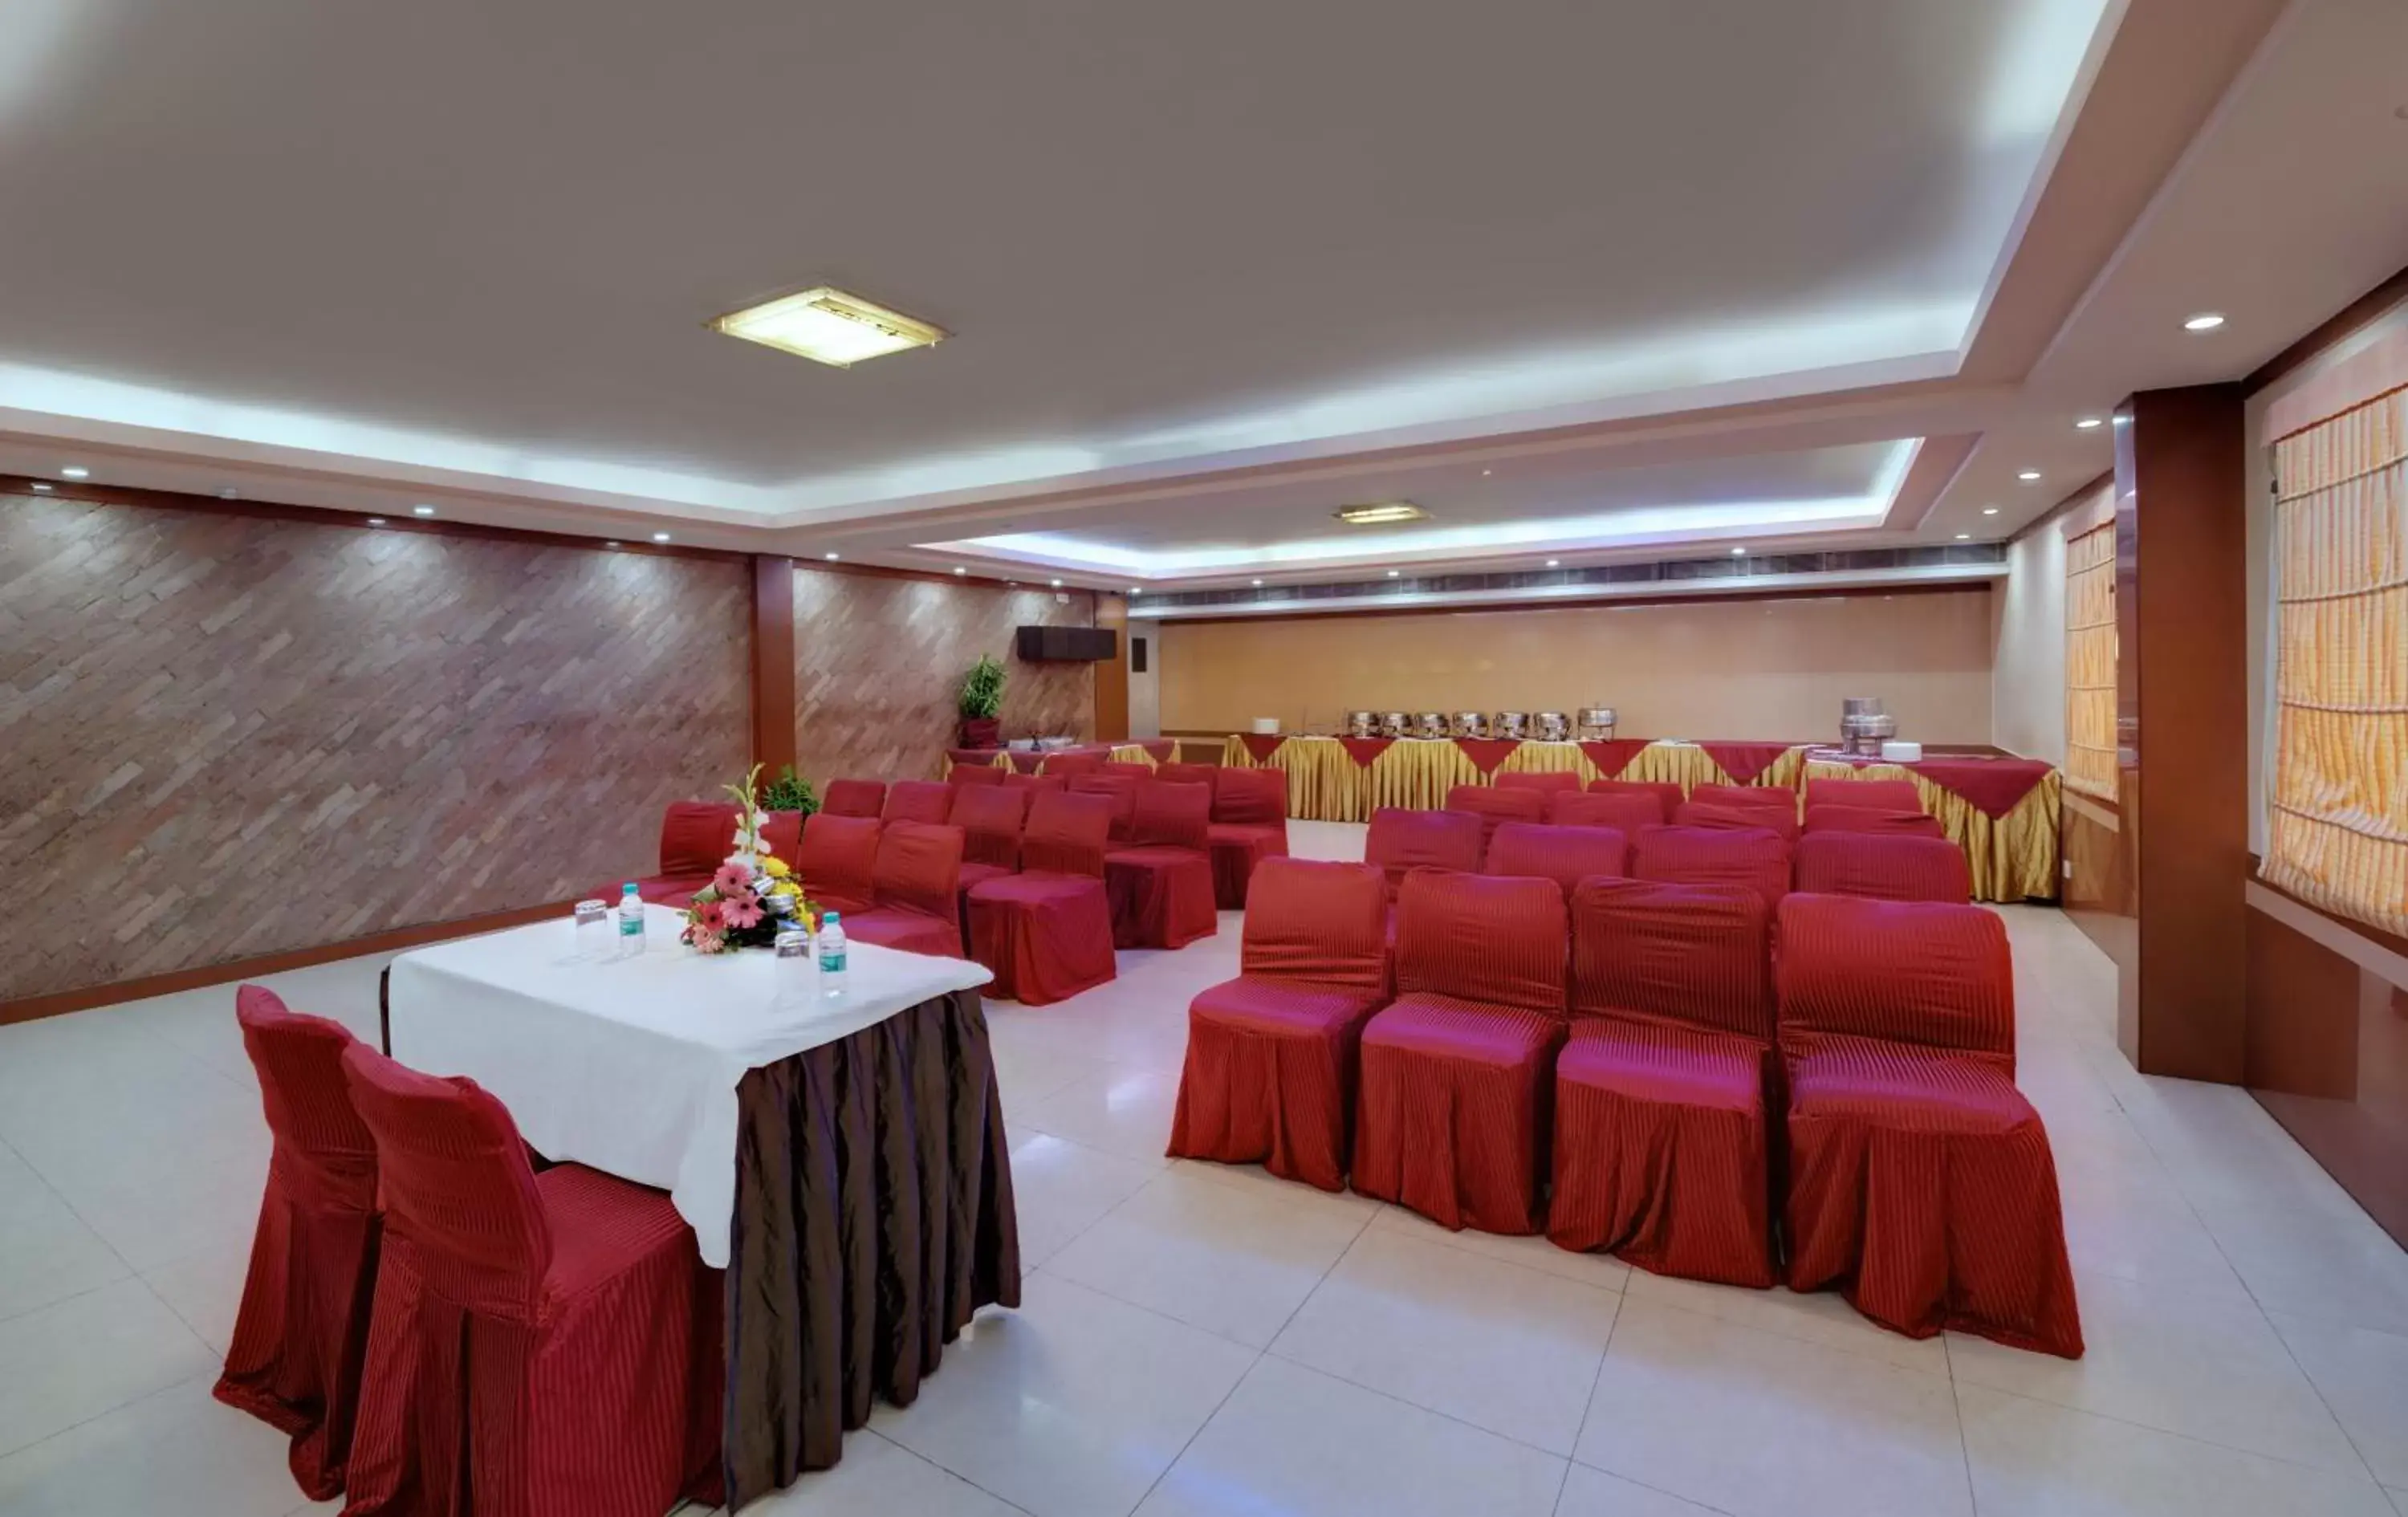 Banquet/Function facilities, Banquet Facilities in Hotel Amar